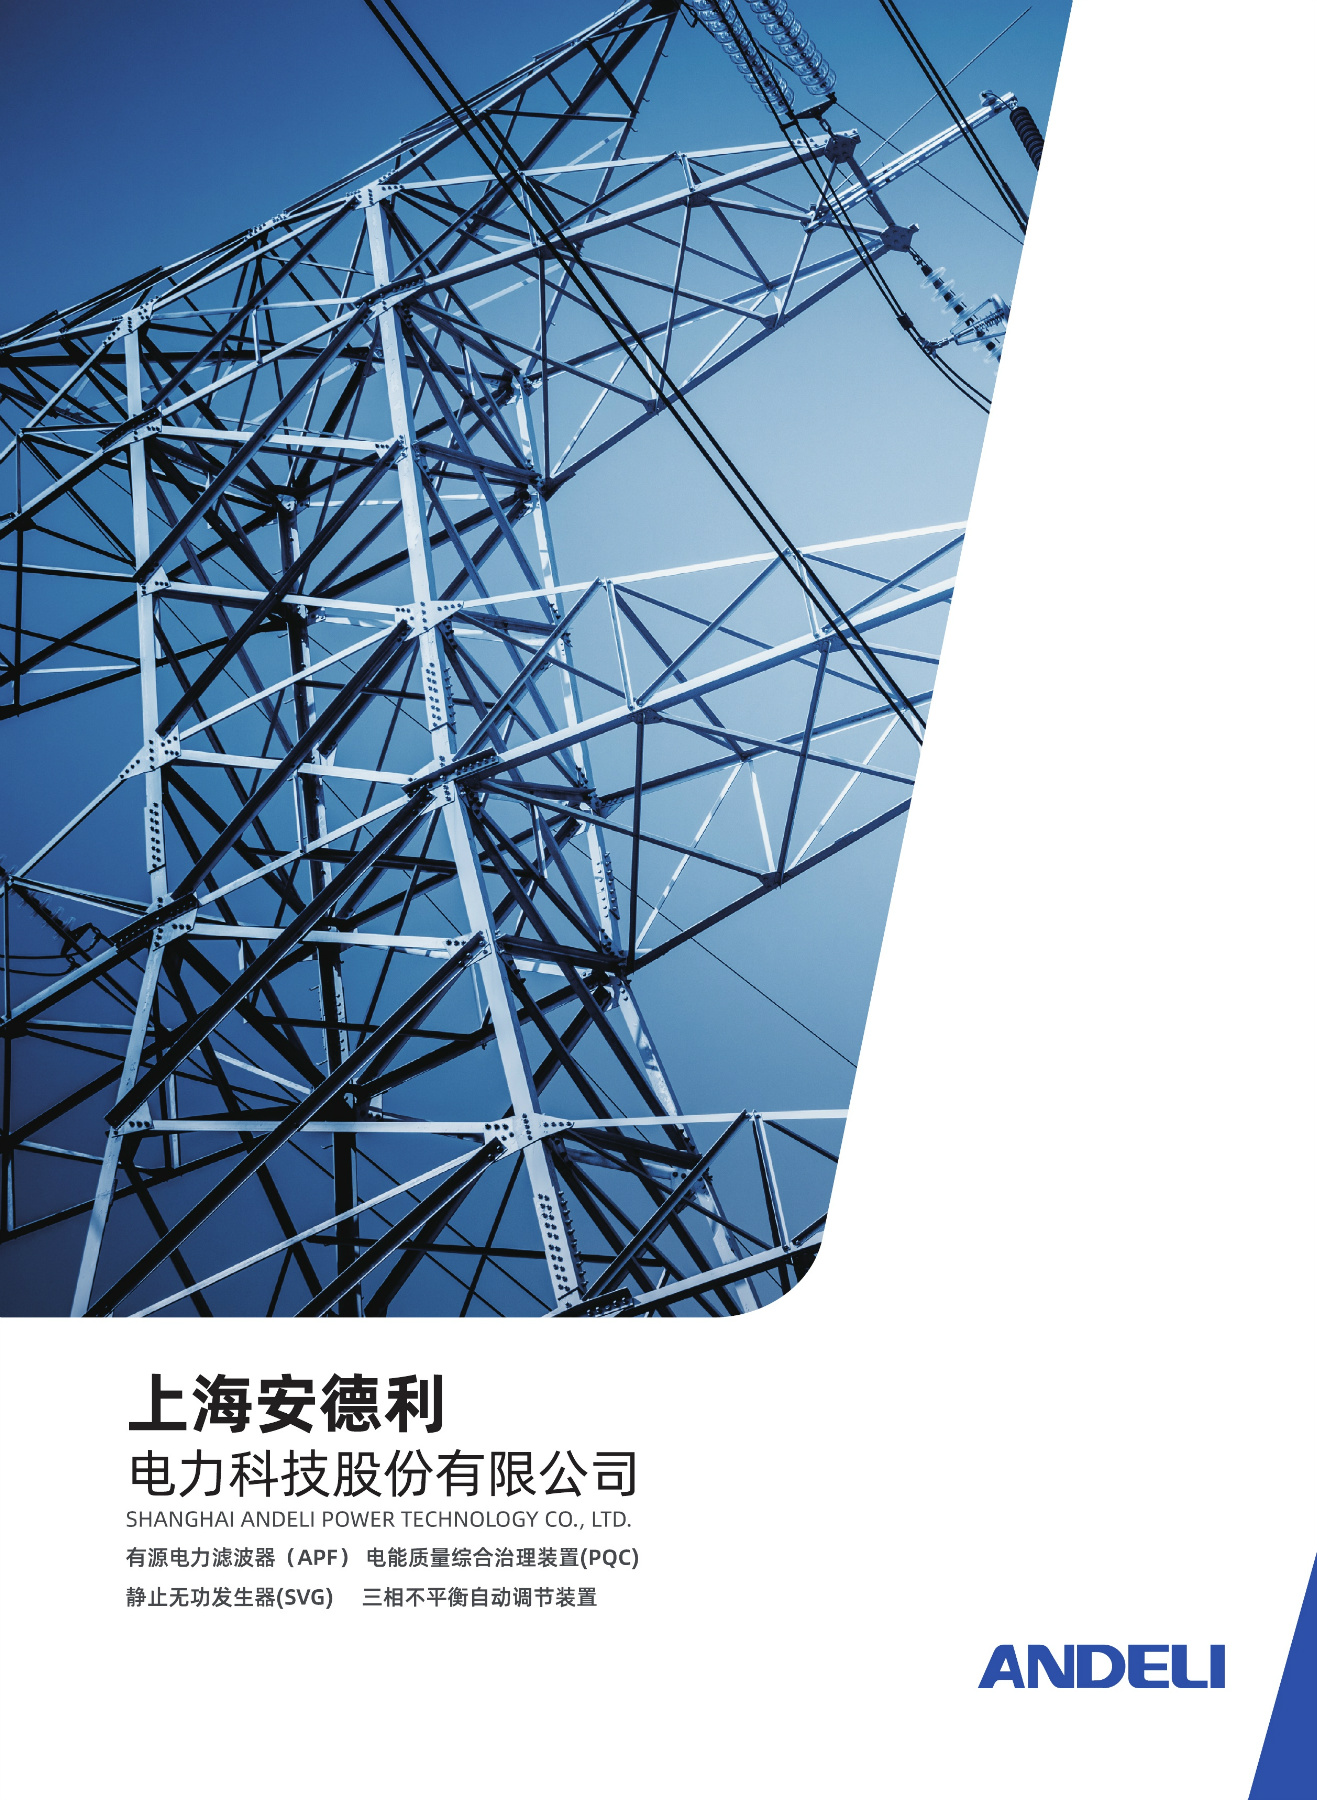 上海安德力电力科技股份有限公司